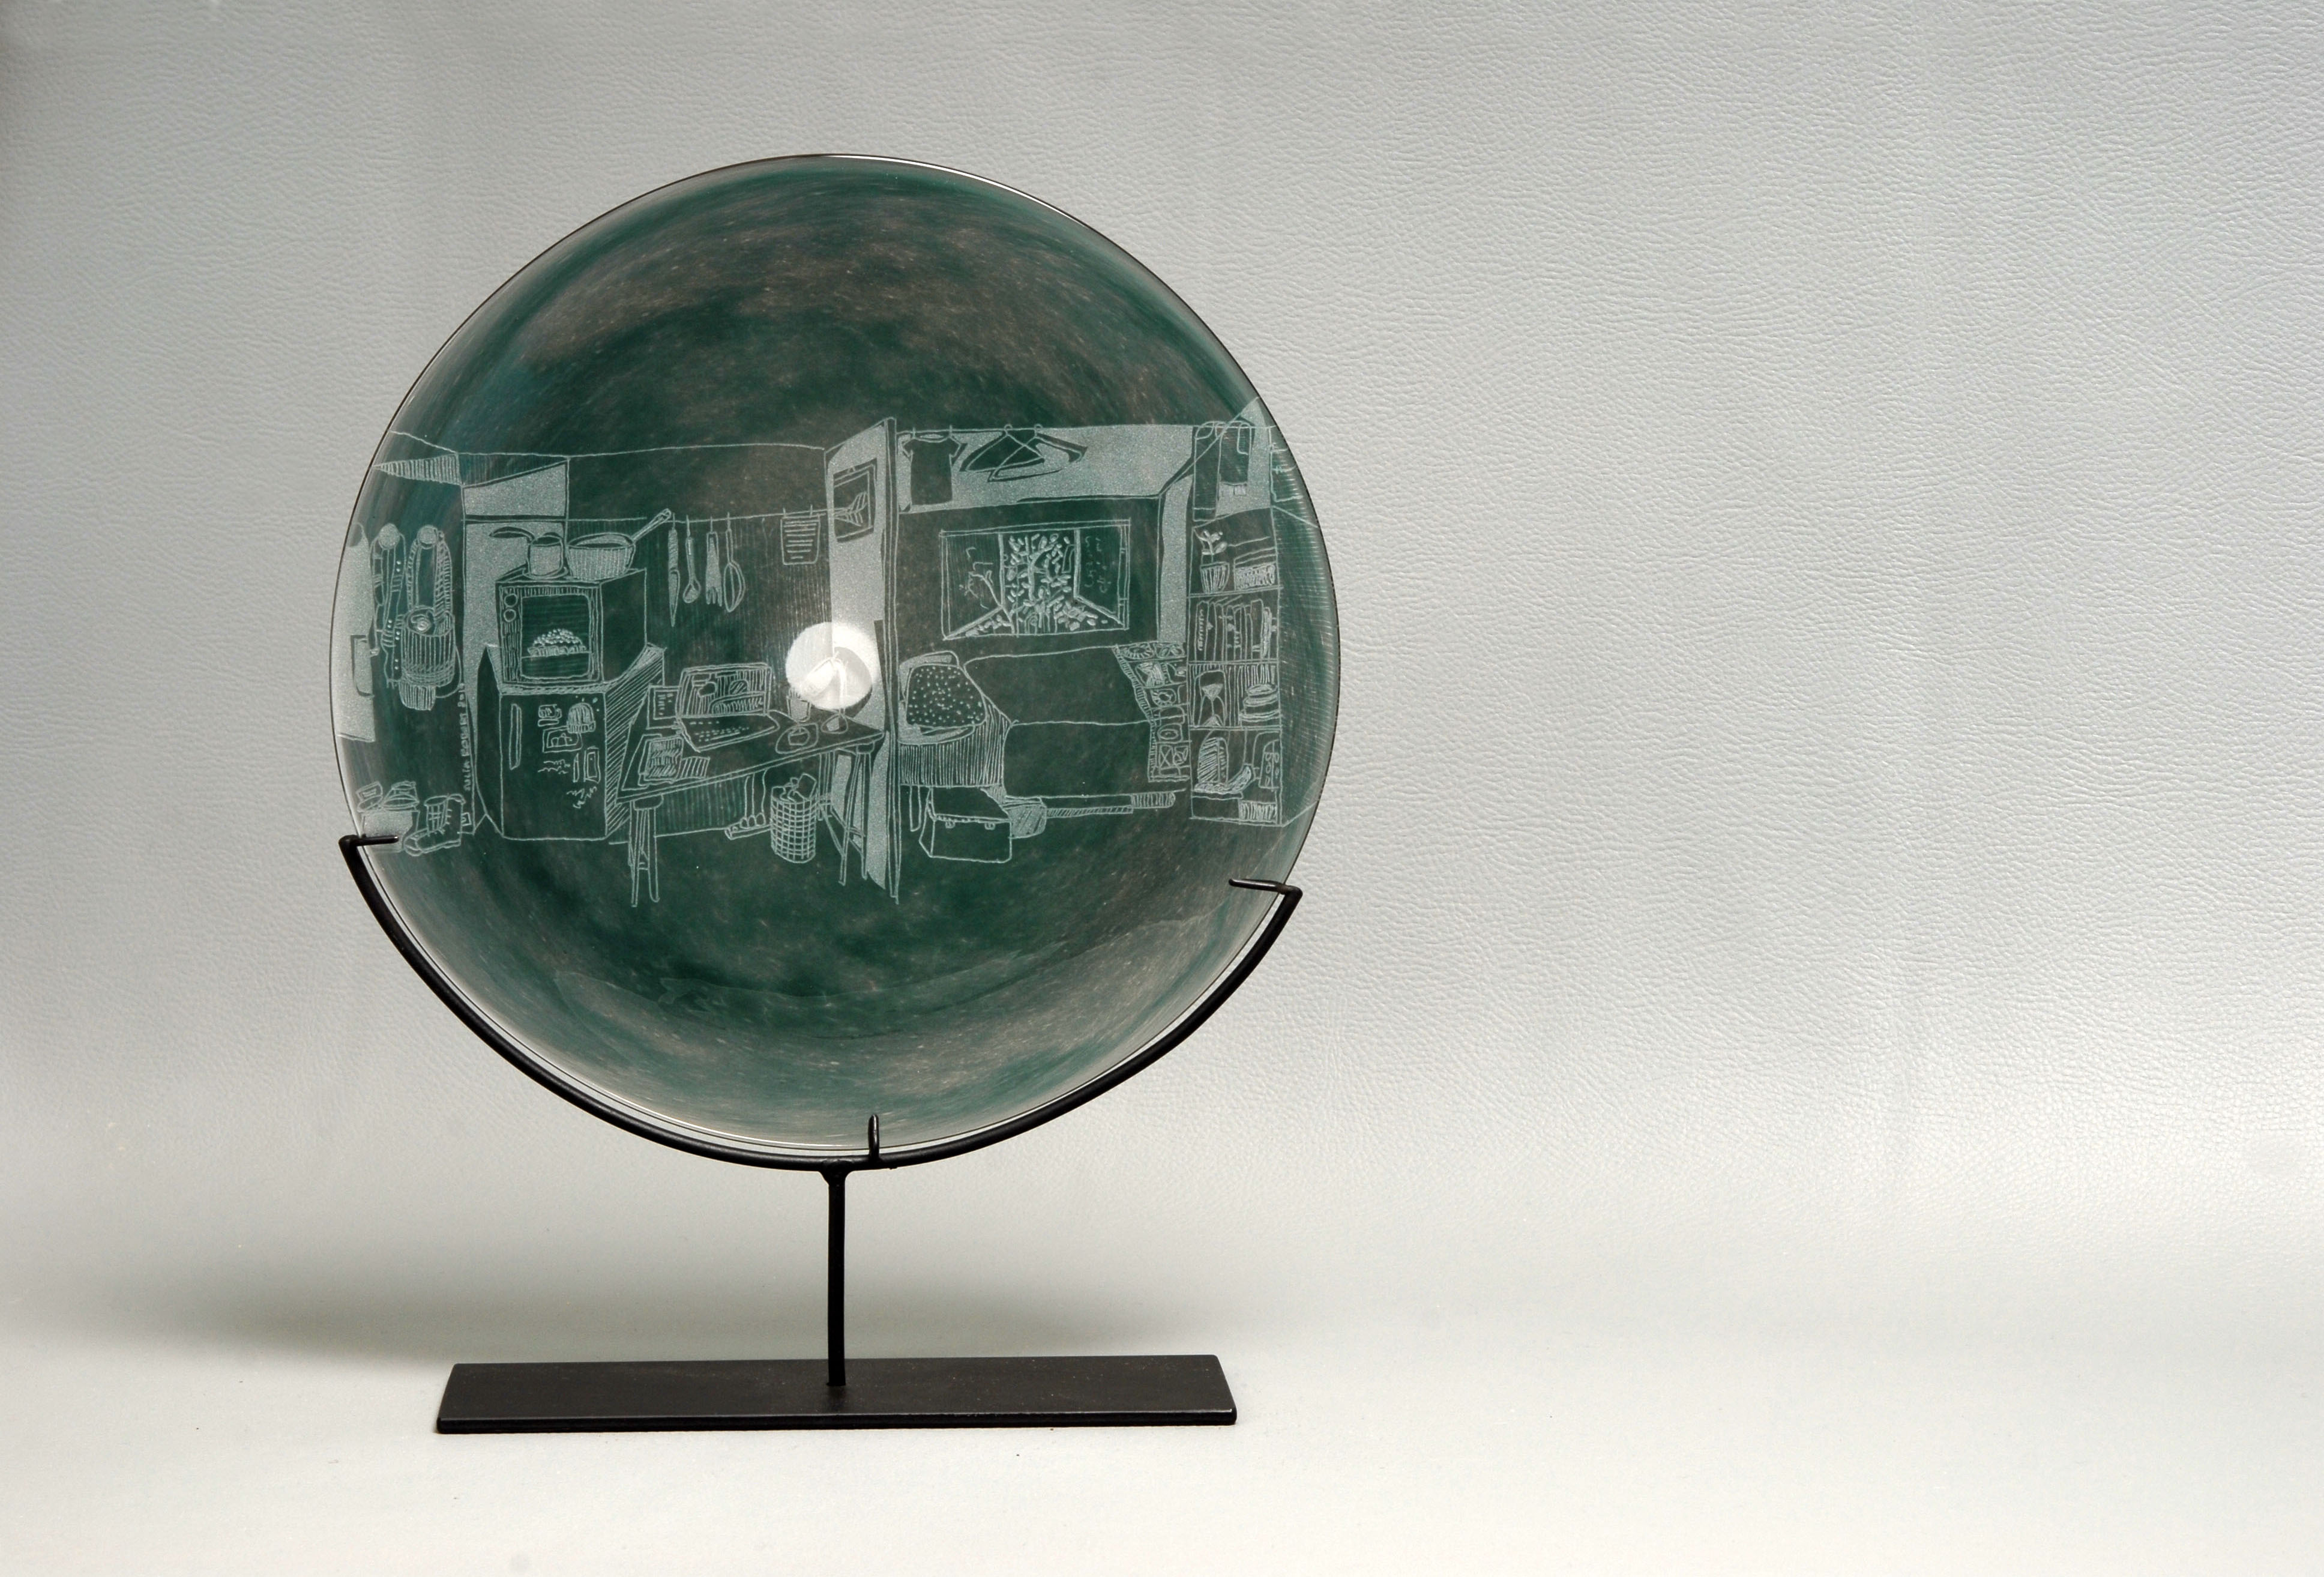 cives-soufflee-gravee-julia-robert-verre-glass-blowing-engraving-9m2-b.jpg